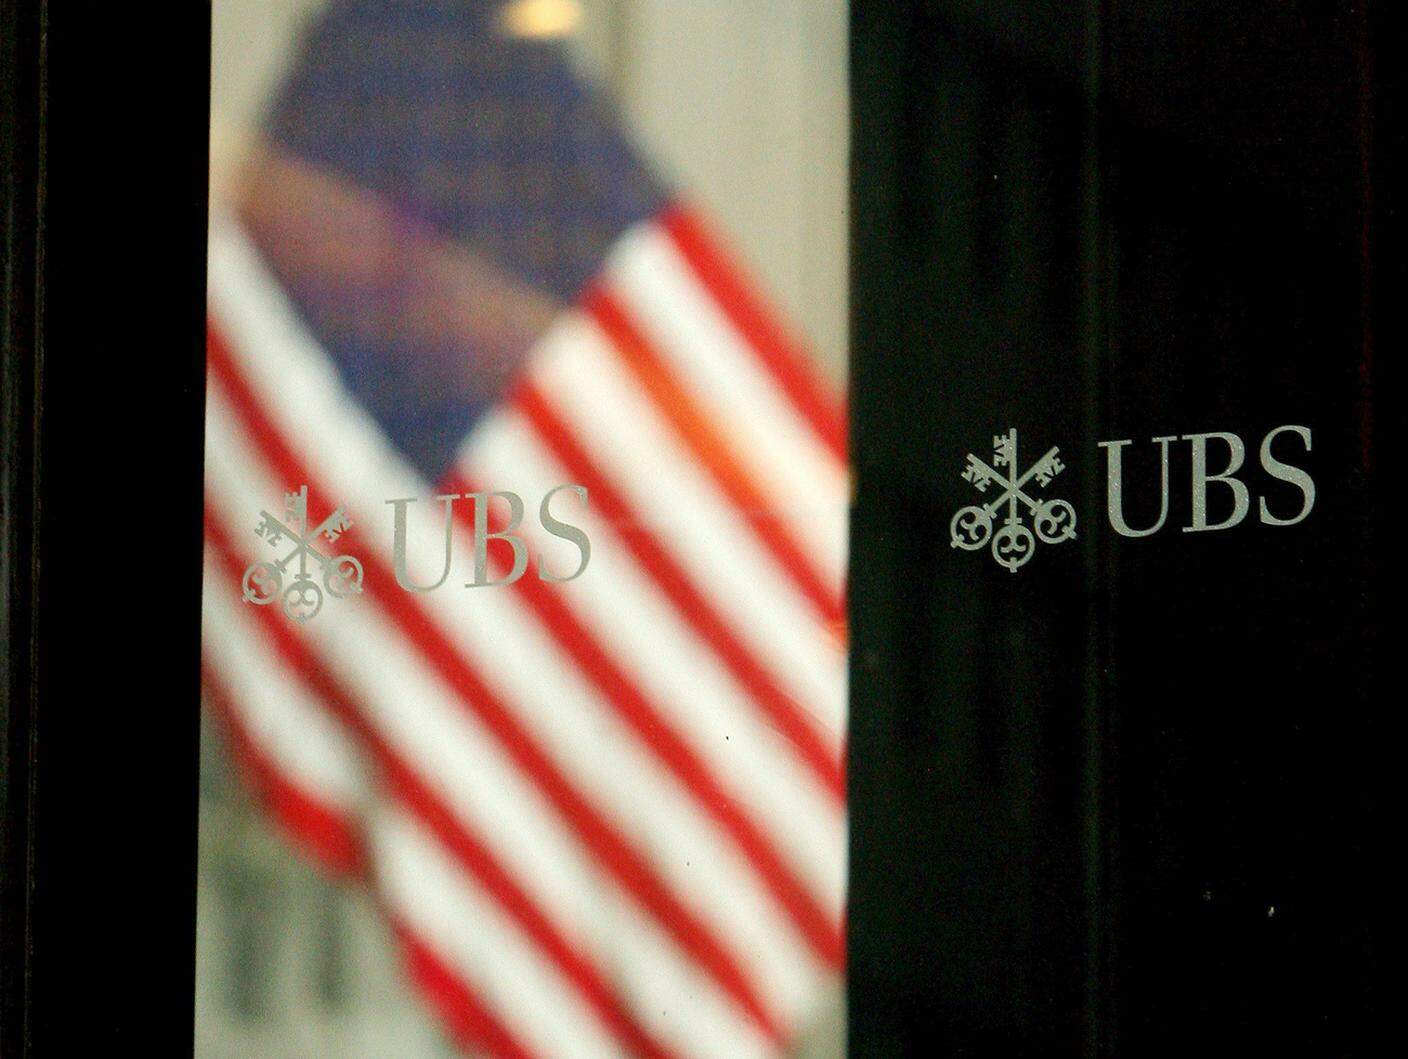 Il crollo negli USA dei mutui subprime innescò la grave crisi che UBS dovette affrontare fra il 2007 e il 2008